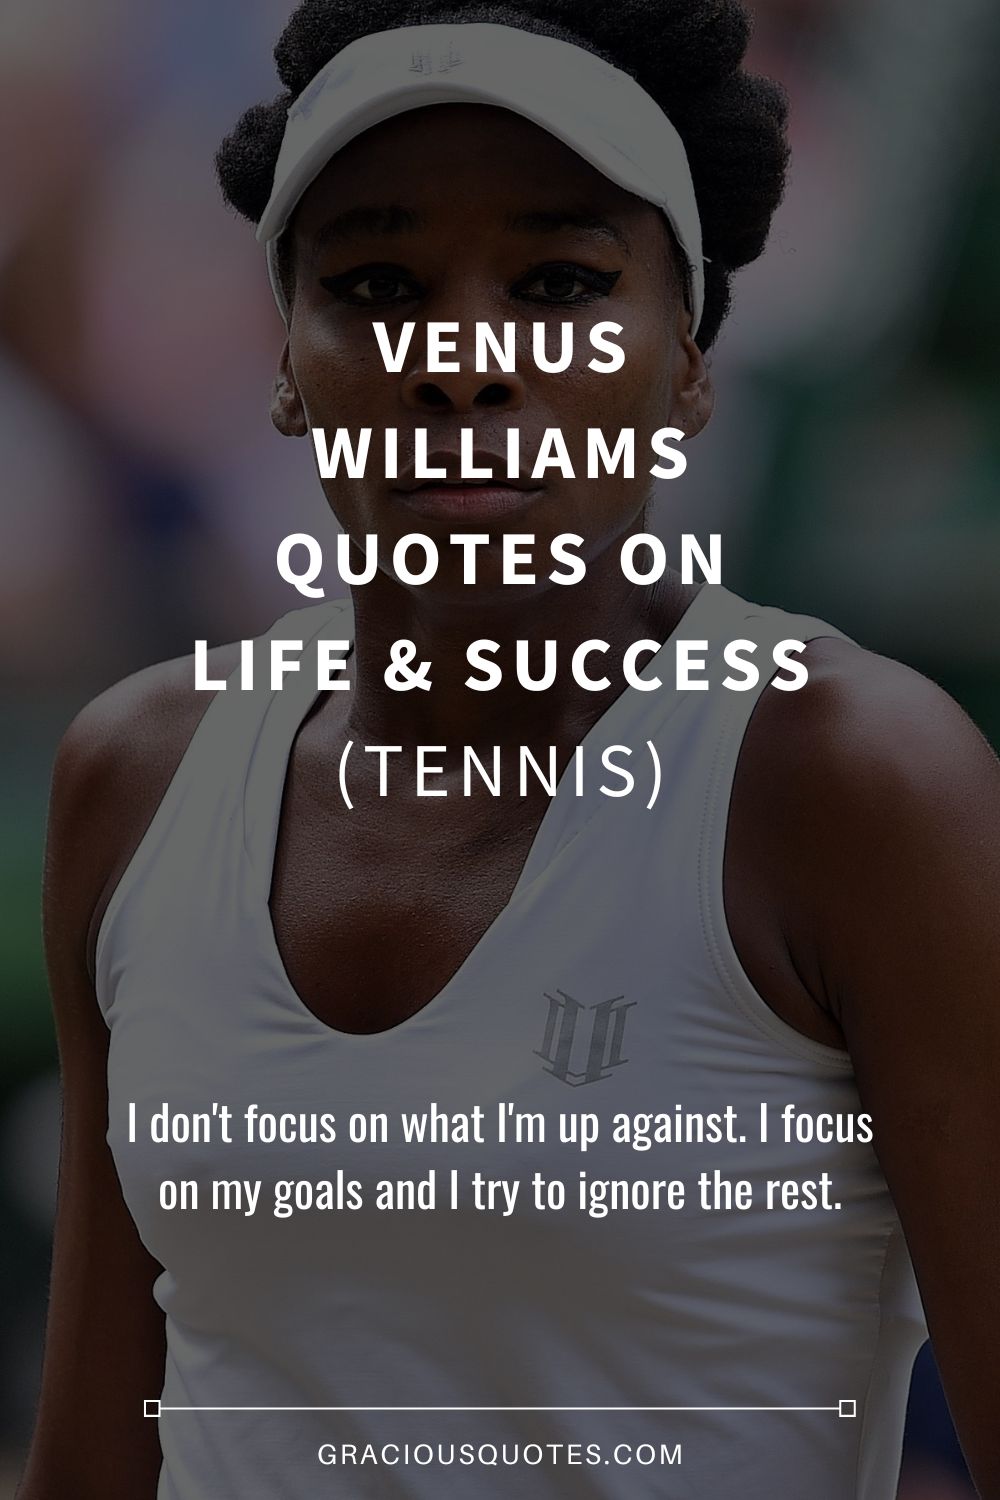 Venus Williams Quotes on Life & Success (TENNIS) - Gracious Quotes